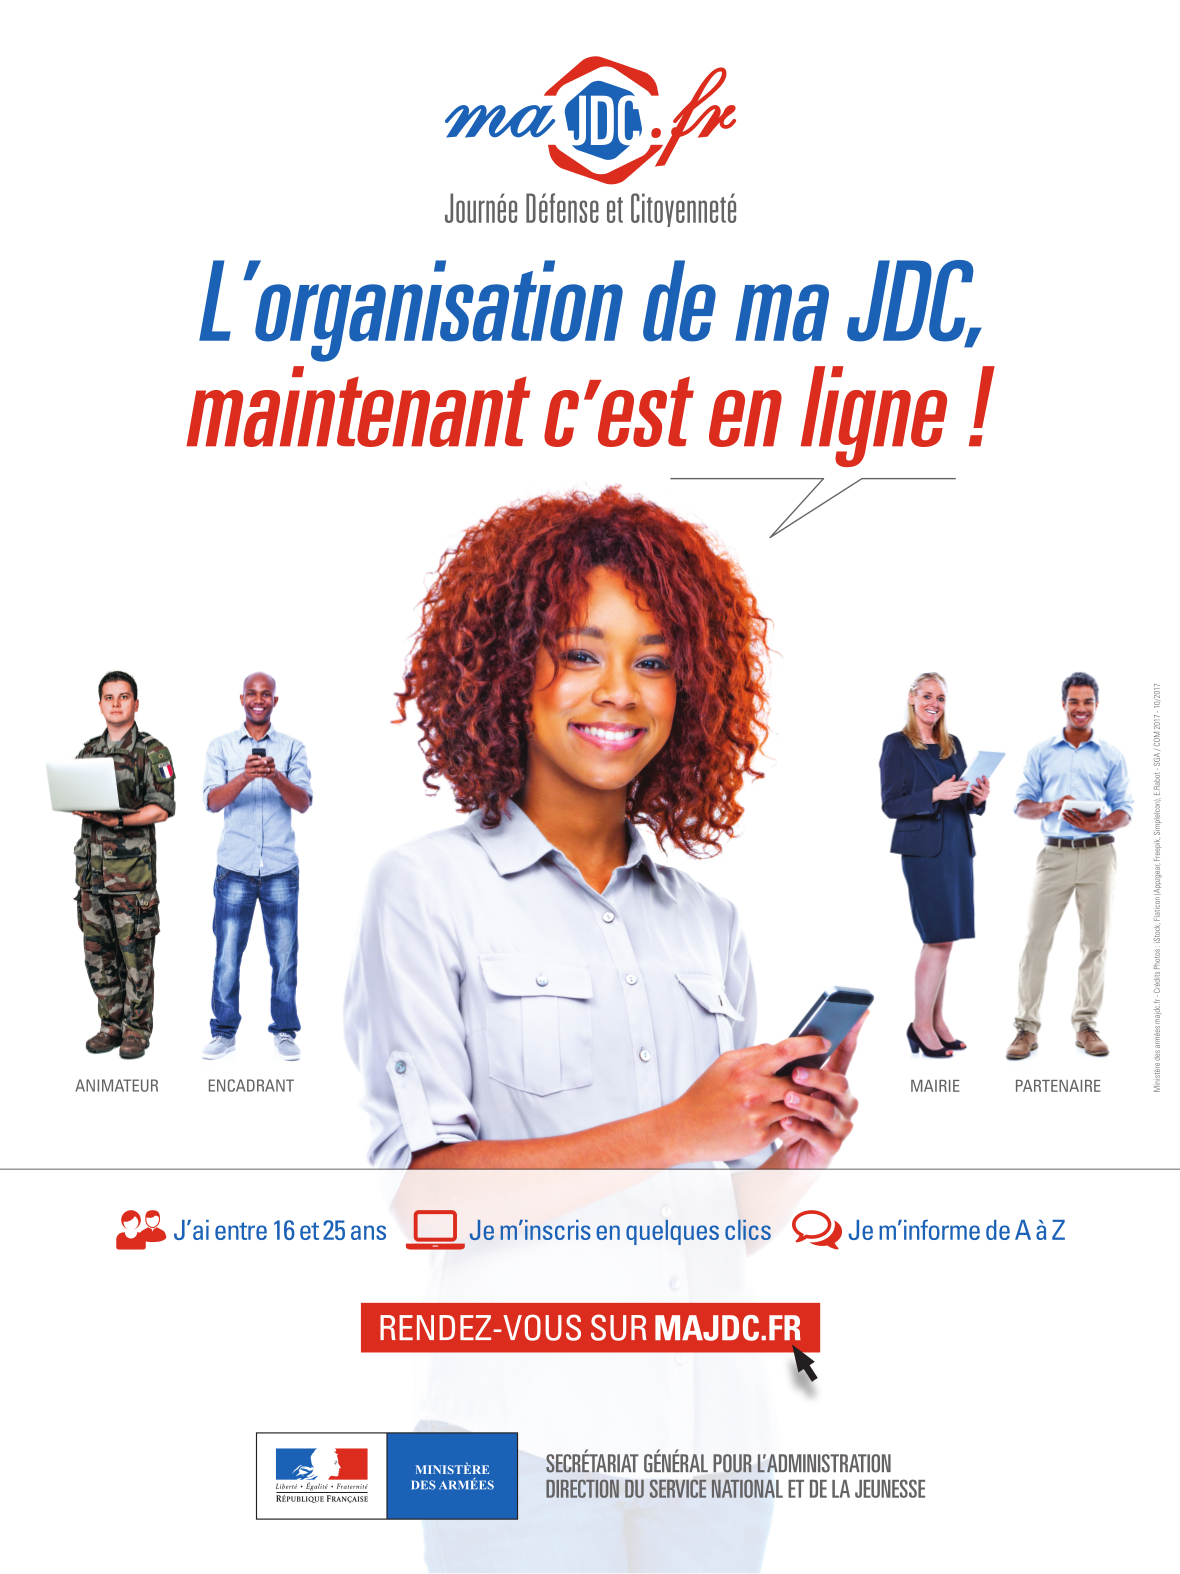 maJDC.fr